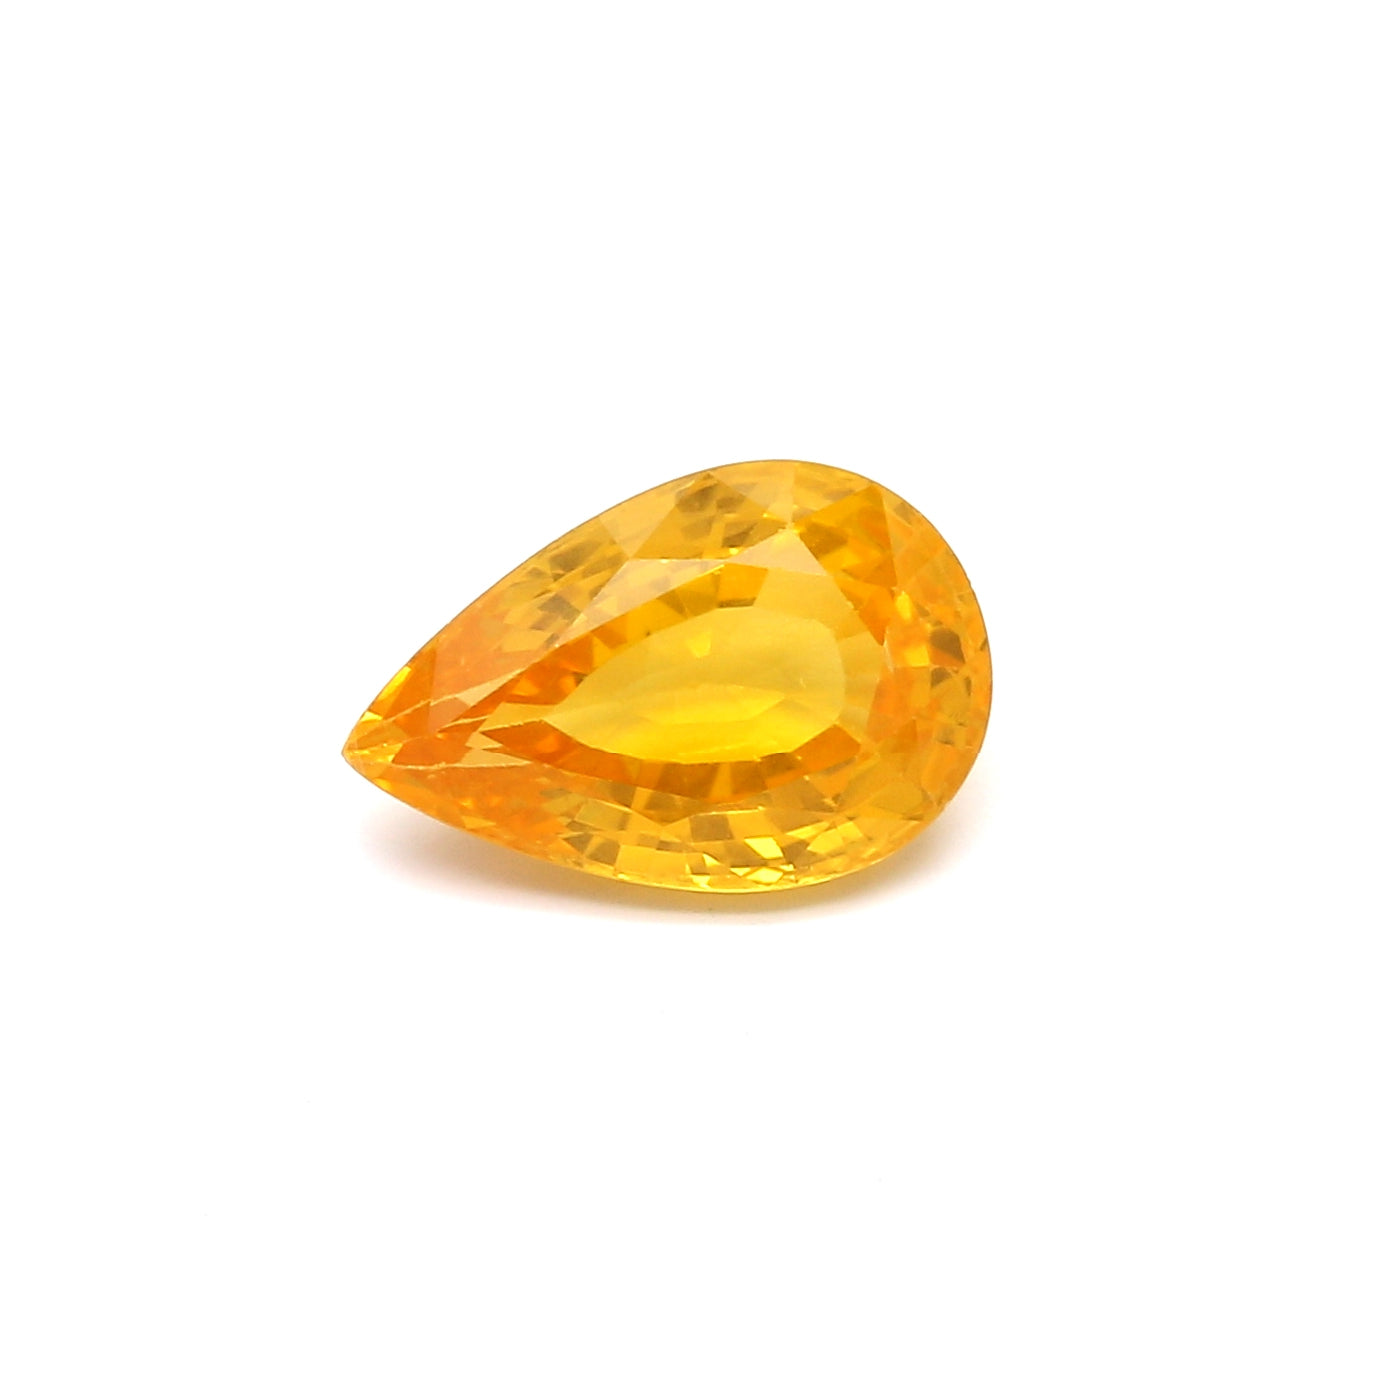 3.15ct Yellow, Pear Shape Sapphire, Heated, Sri Lanka - 11.39 x 7.43 x 4.49mm